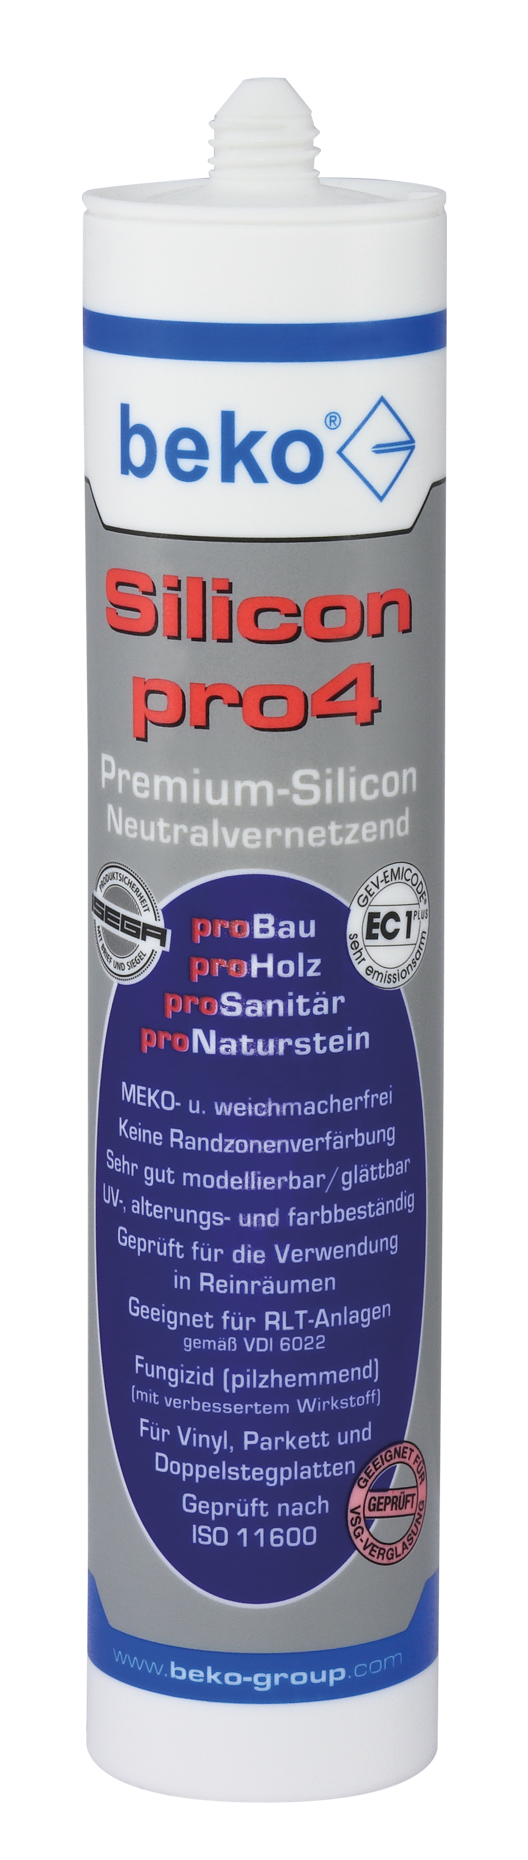 Beko Silicon pro4 Premium 310 ml dunkelbraun/mahagoni